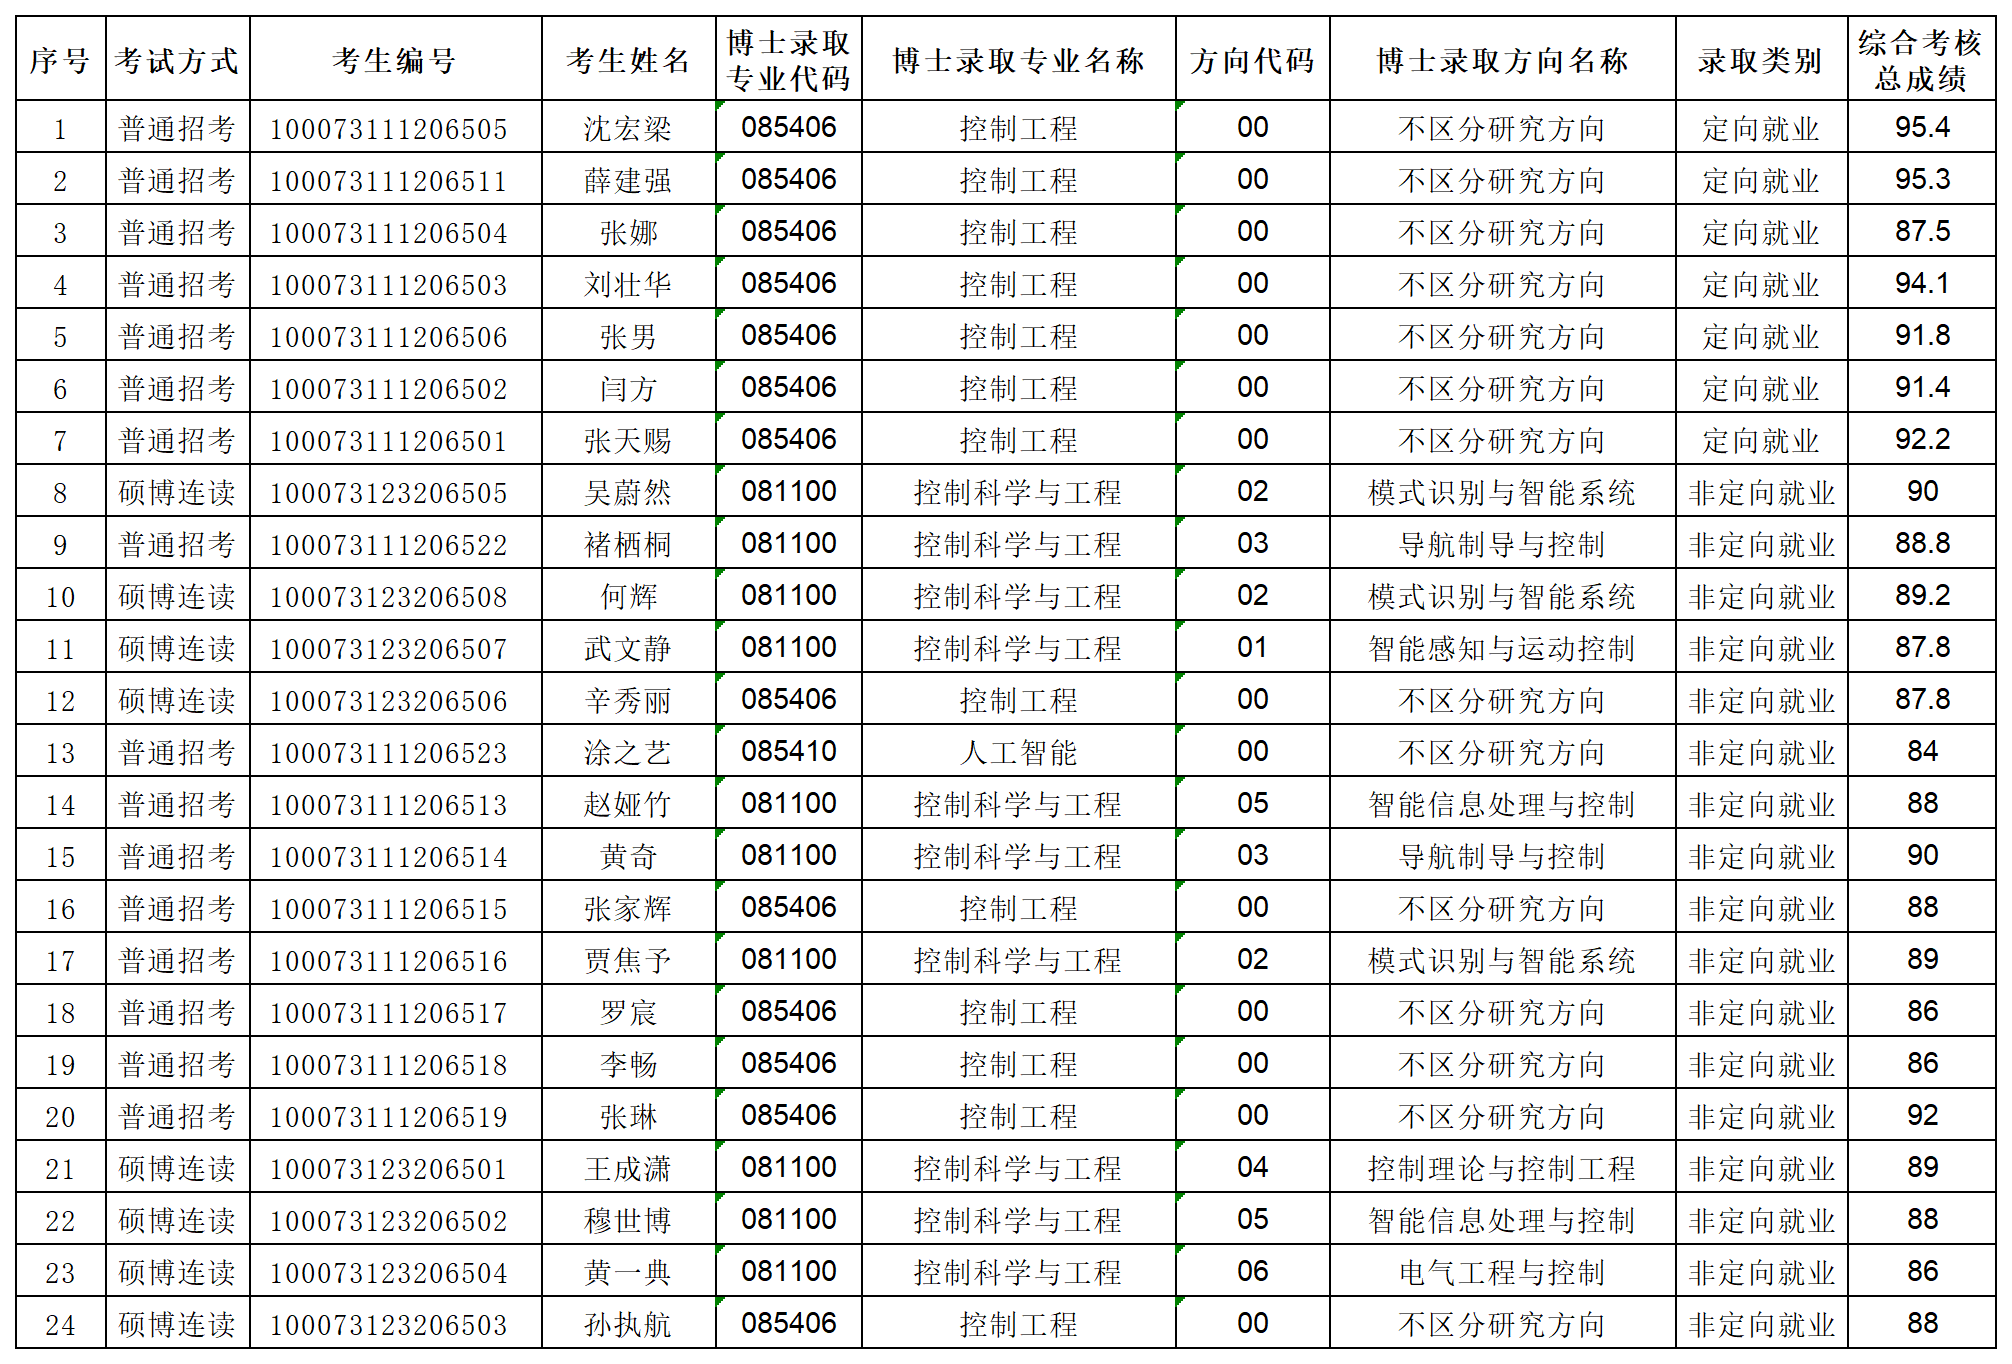 北京理工大学博盈彩票2023年专项博士研究生拟录取名单公示_Sheet1.png